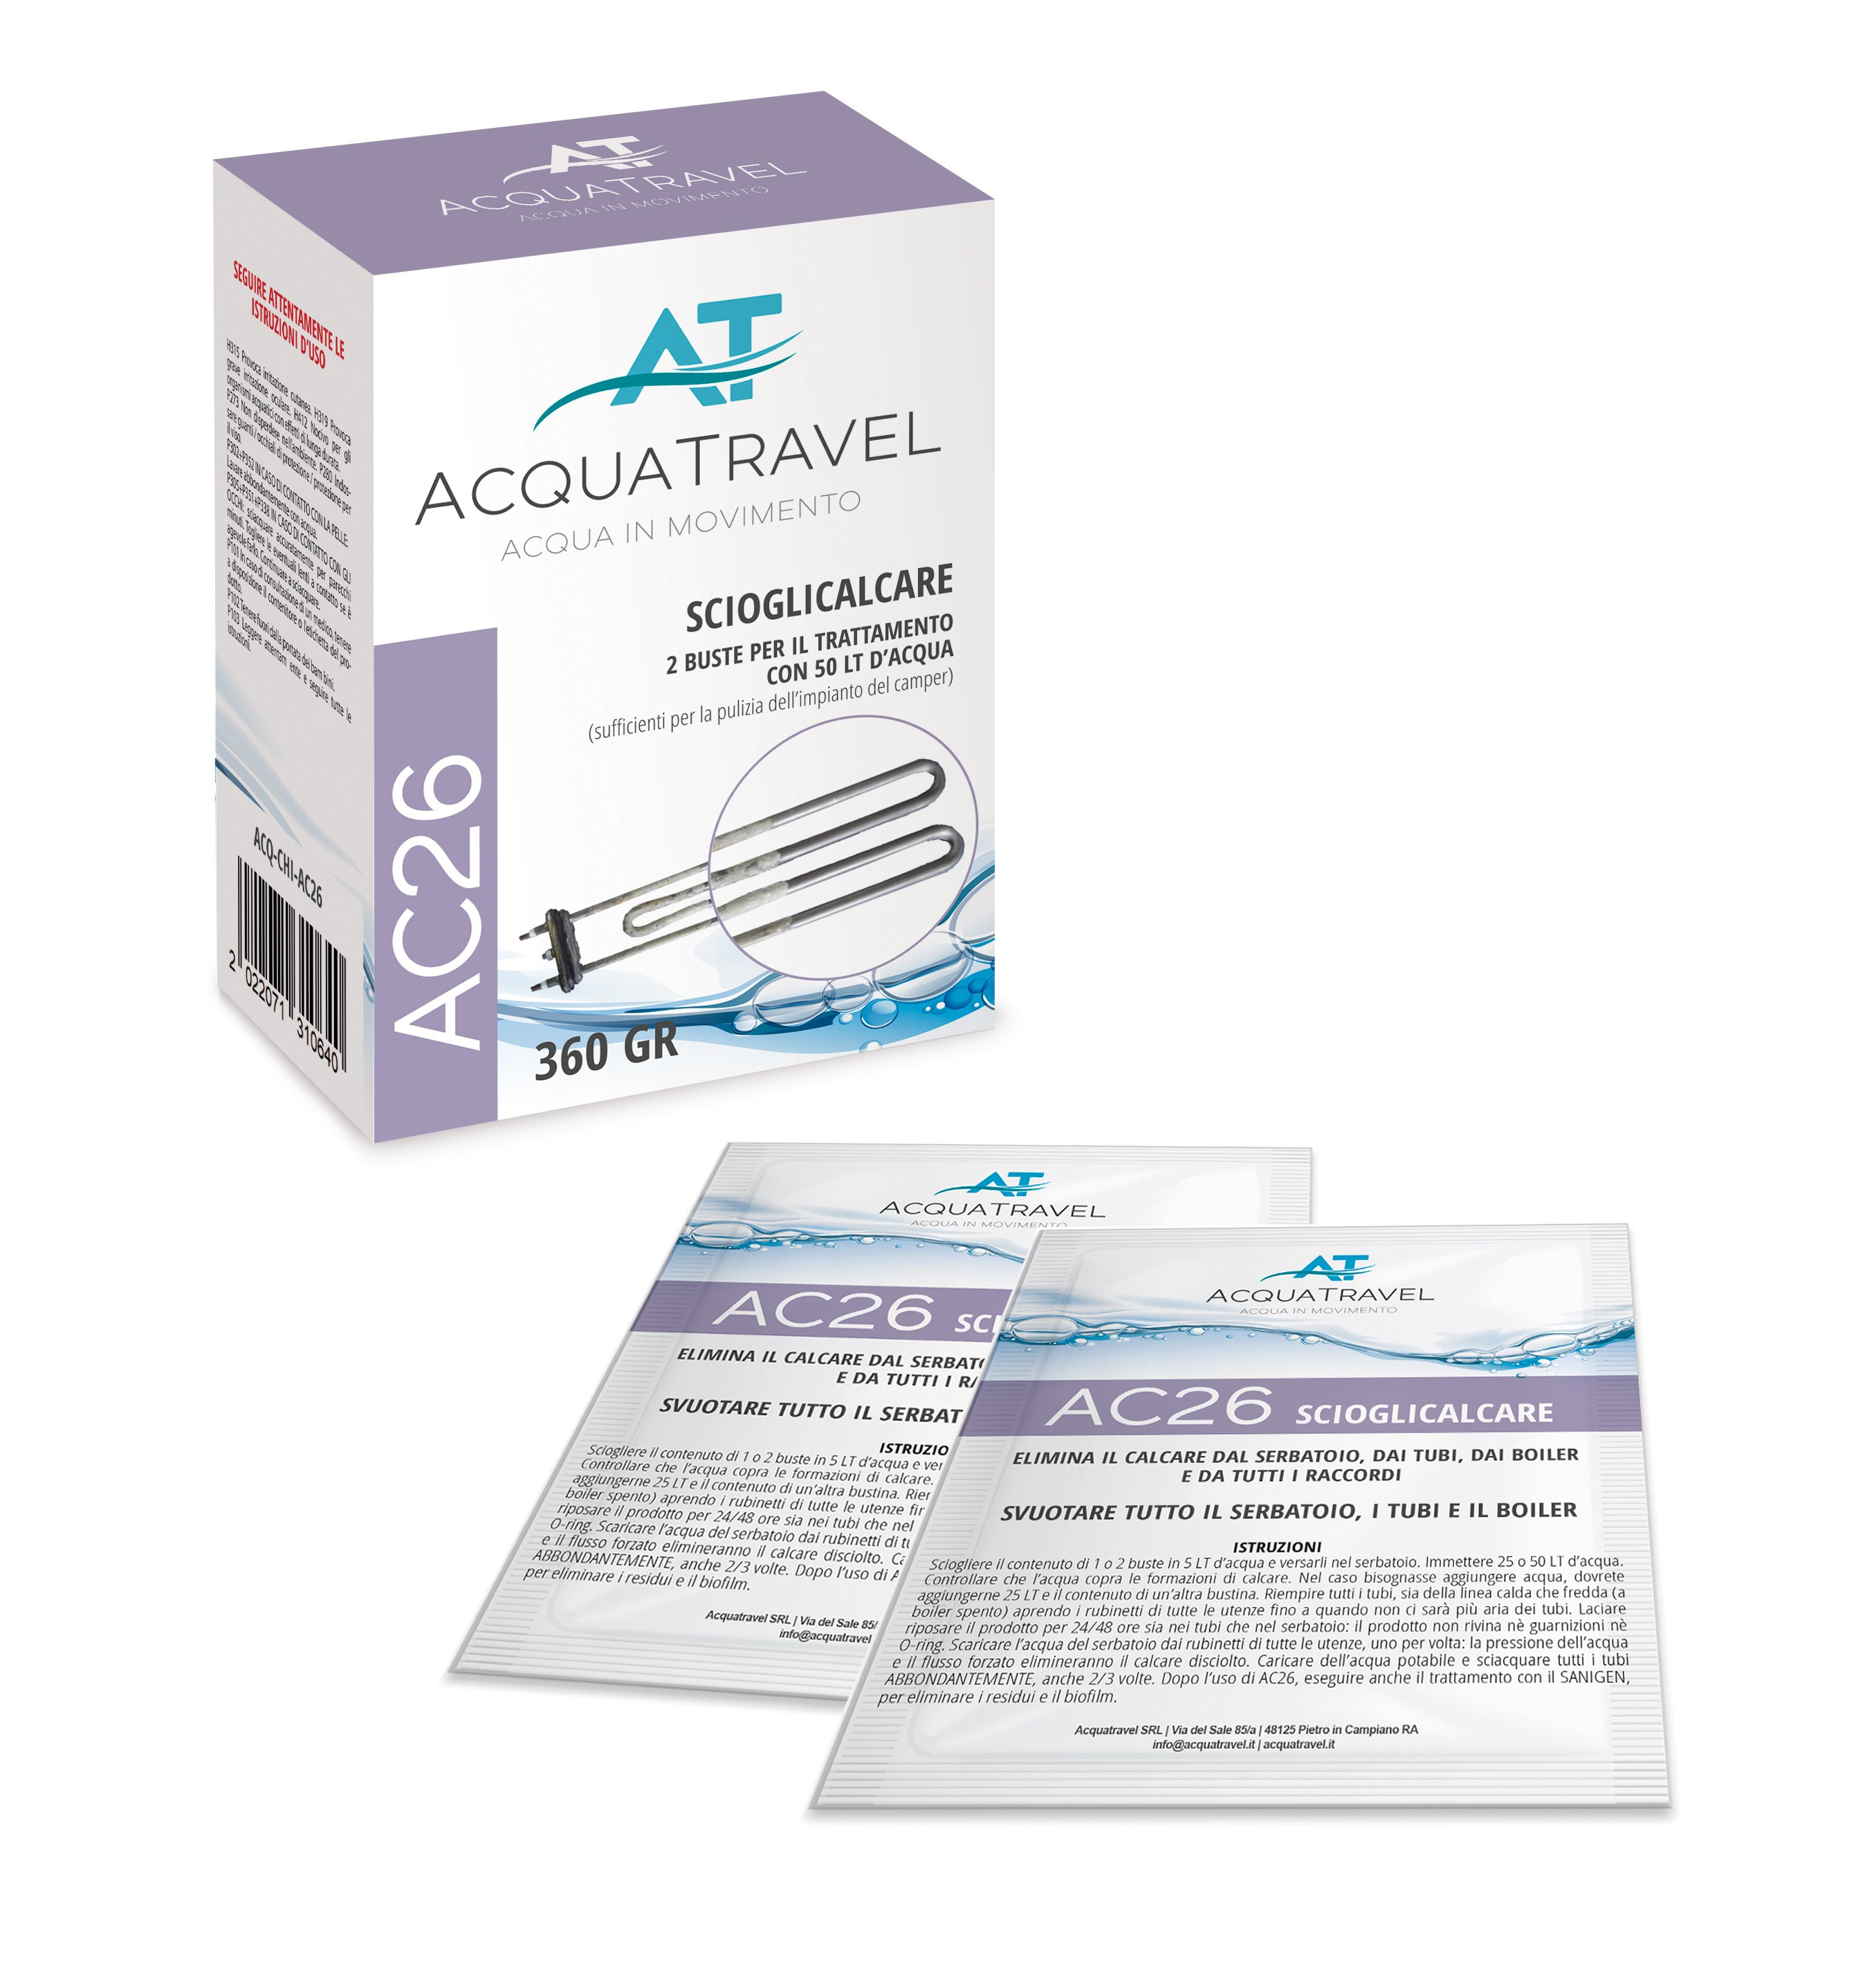 AC26 Sciogli calcare Acquatravel - ACQ-CHI-AC26